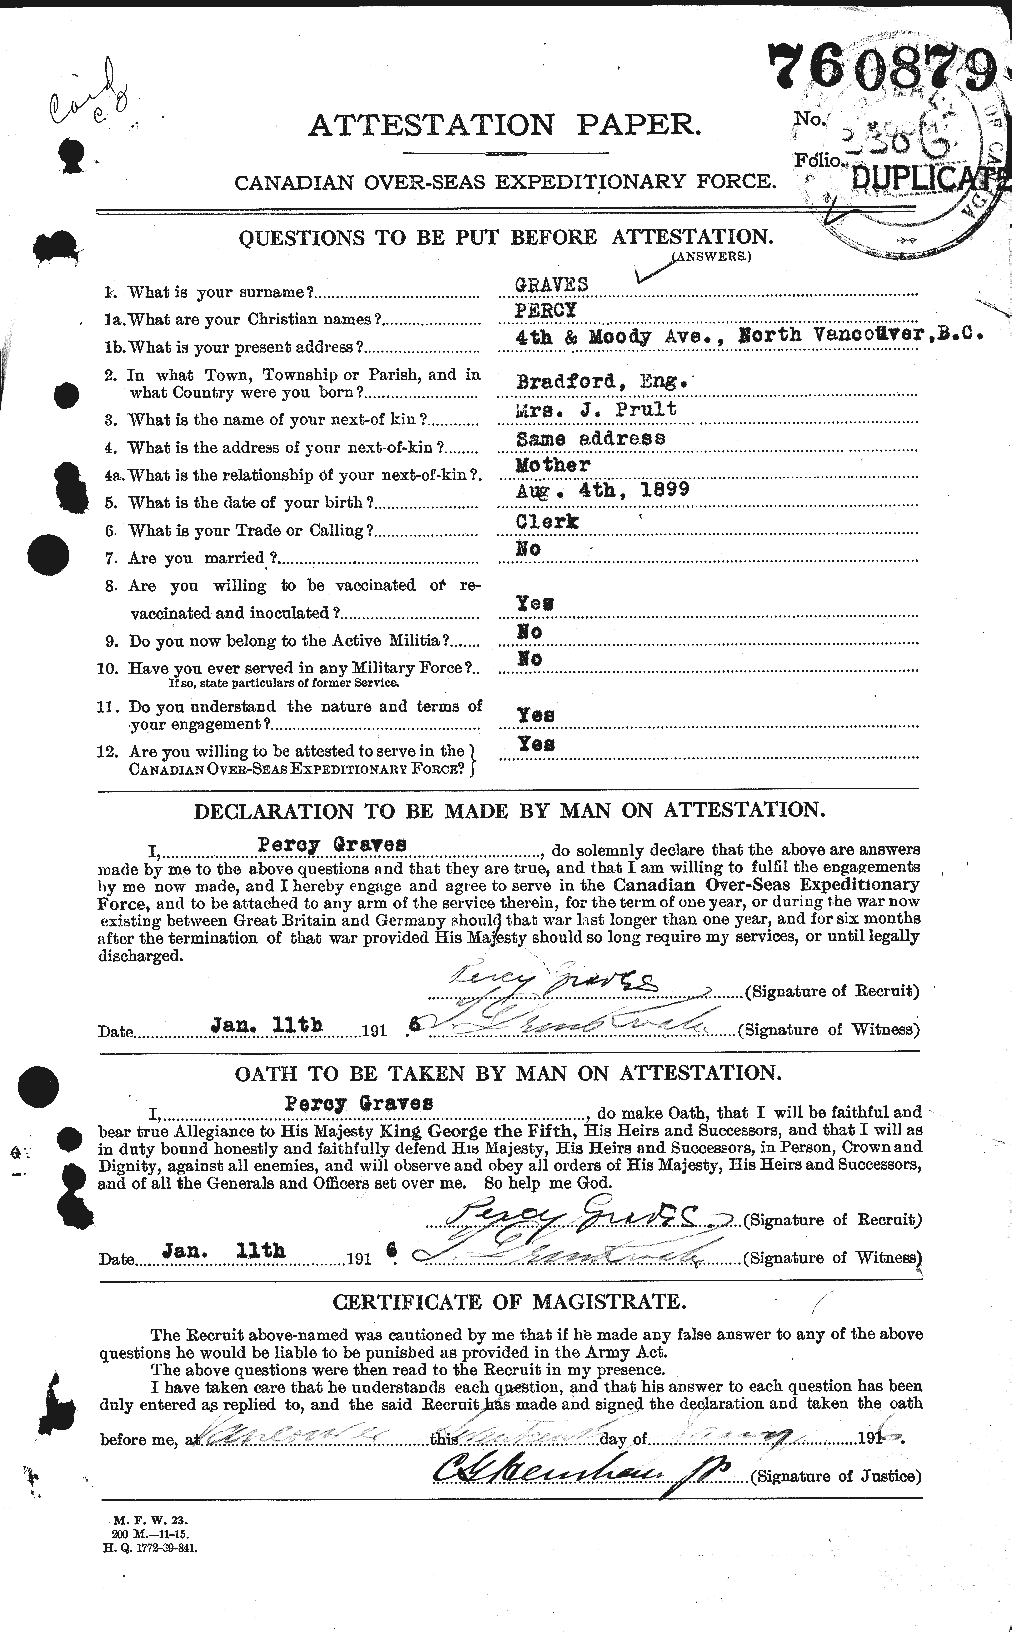 Dossiers du Personnel de la Première Guerre mondiale - CEC 359838a